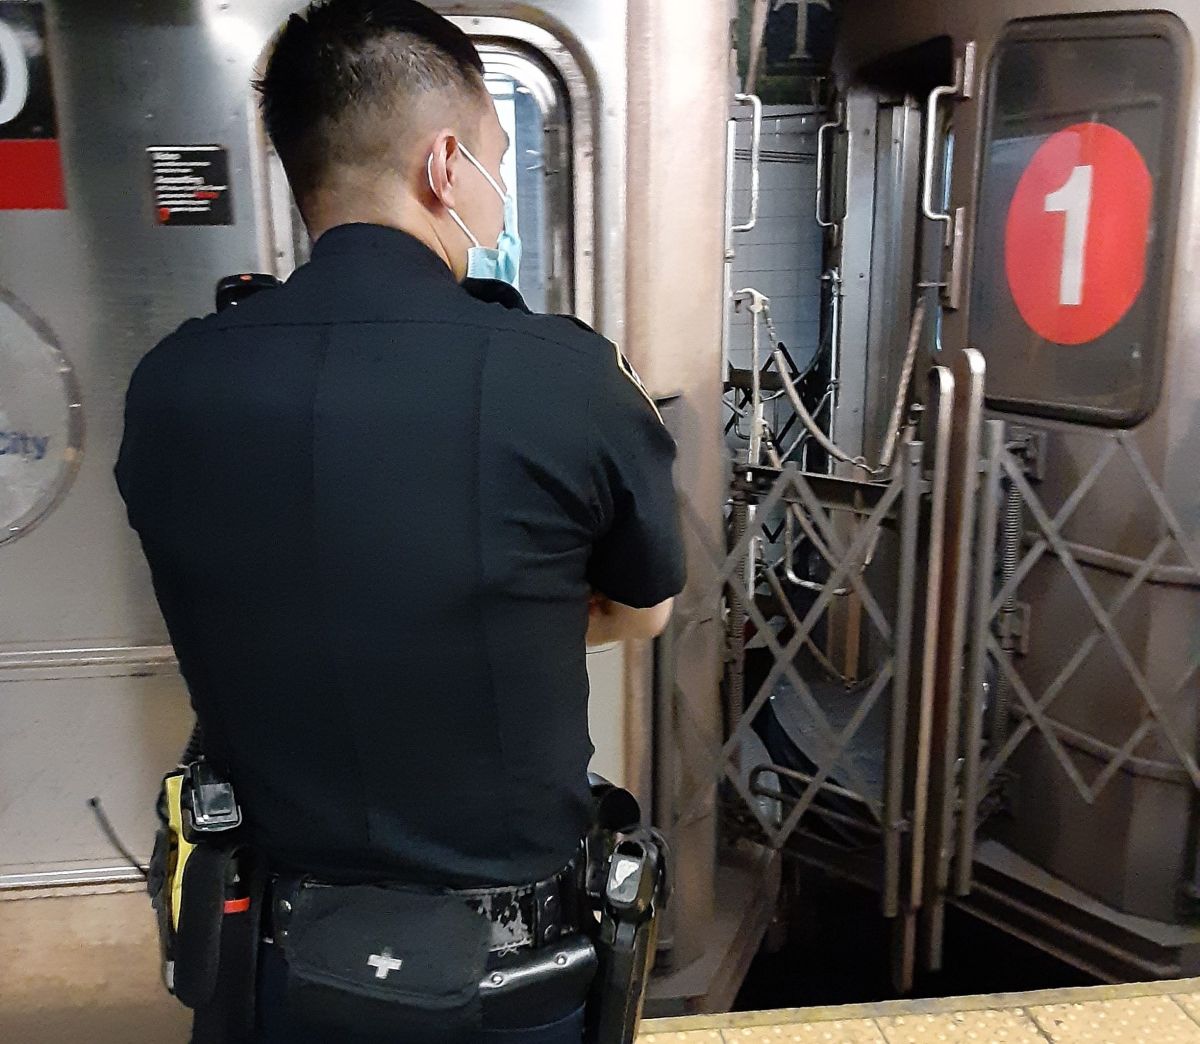 Agente NYPD en el Metro.